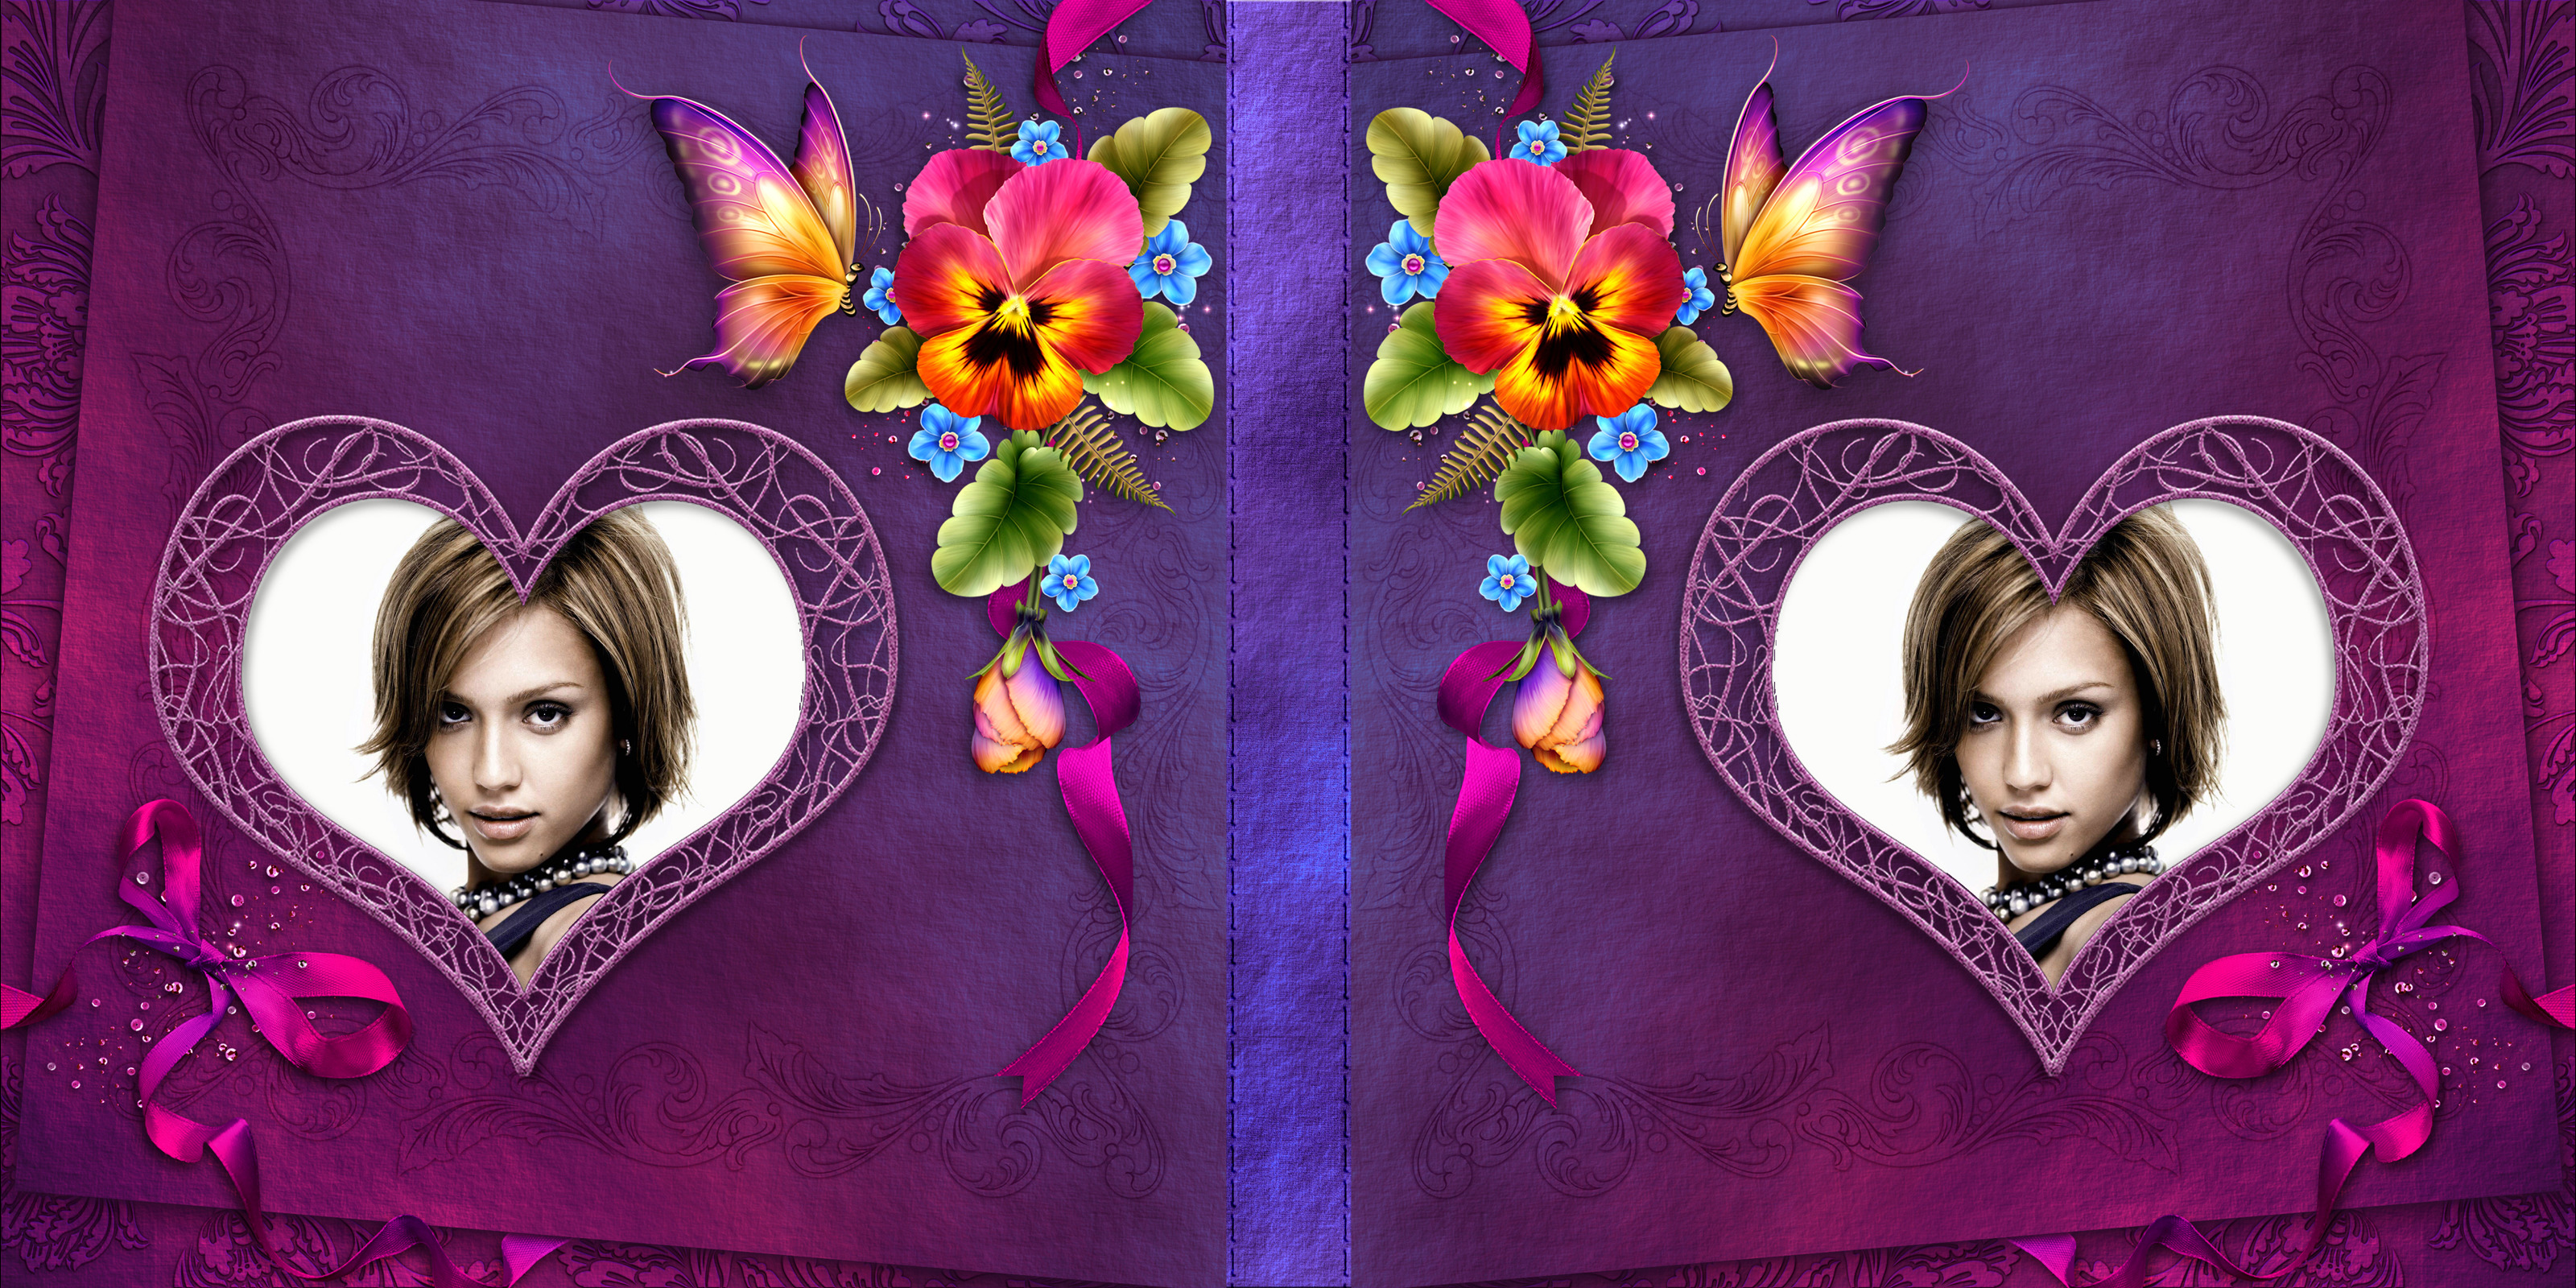 Couverture de livre violette avec fleurs, coeurs et papillons #4 Montage photo